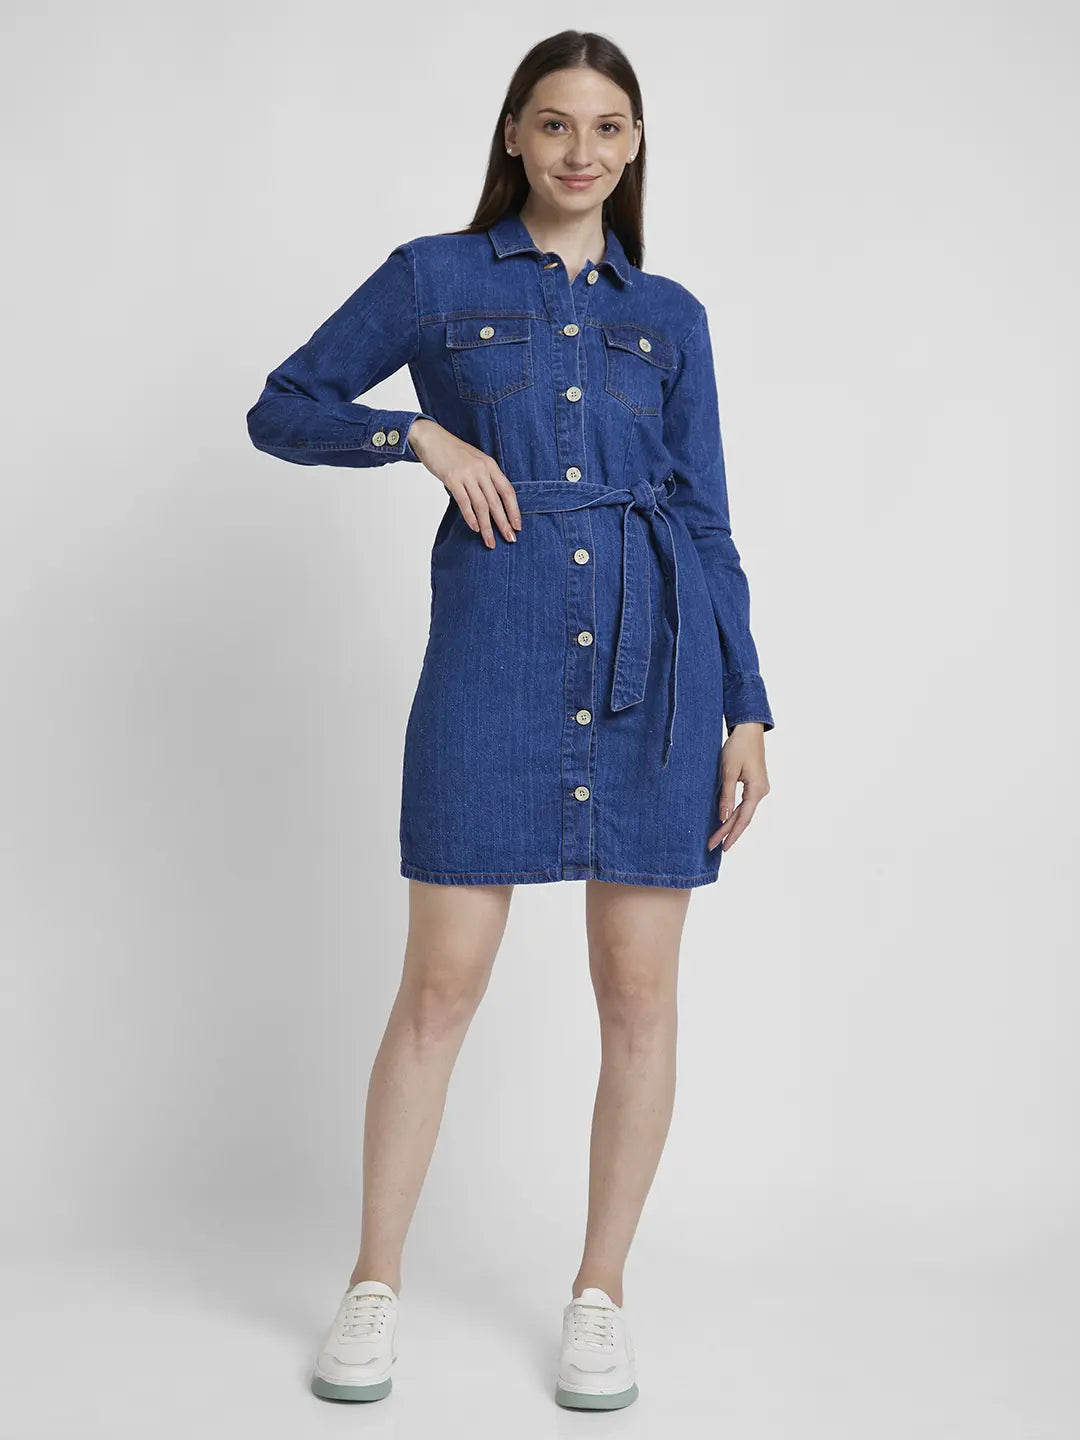 Spykar Women Mid Blue Cotton Regular Fit Classic Collar Knee Length Denim Dress